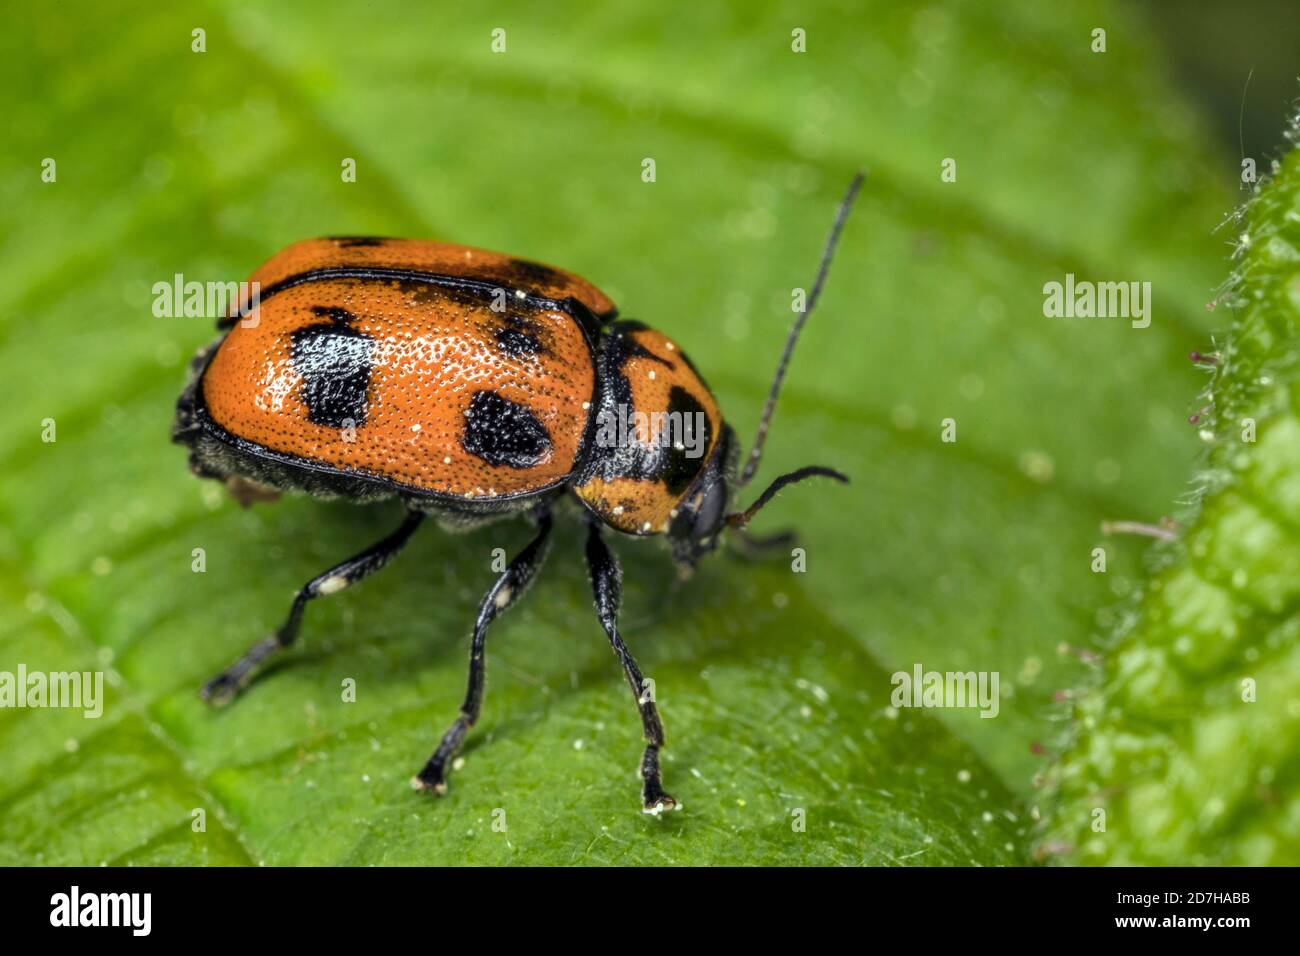 Leaf beetle (Cryptocephalus sexpunctatus), sits on a leaf, Germany Stock Photo